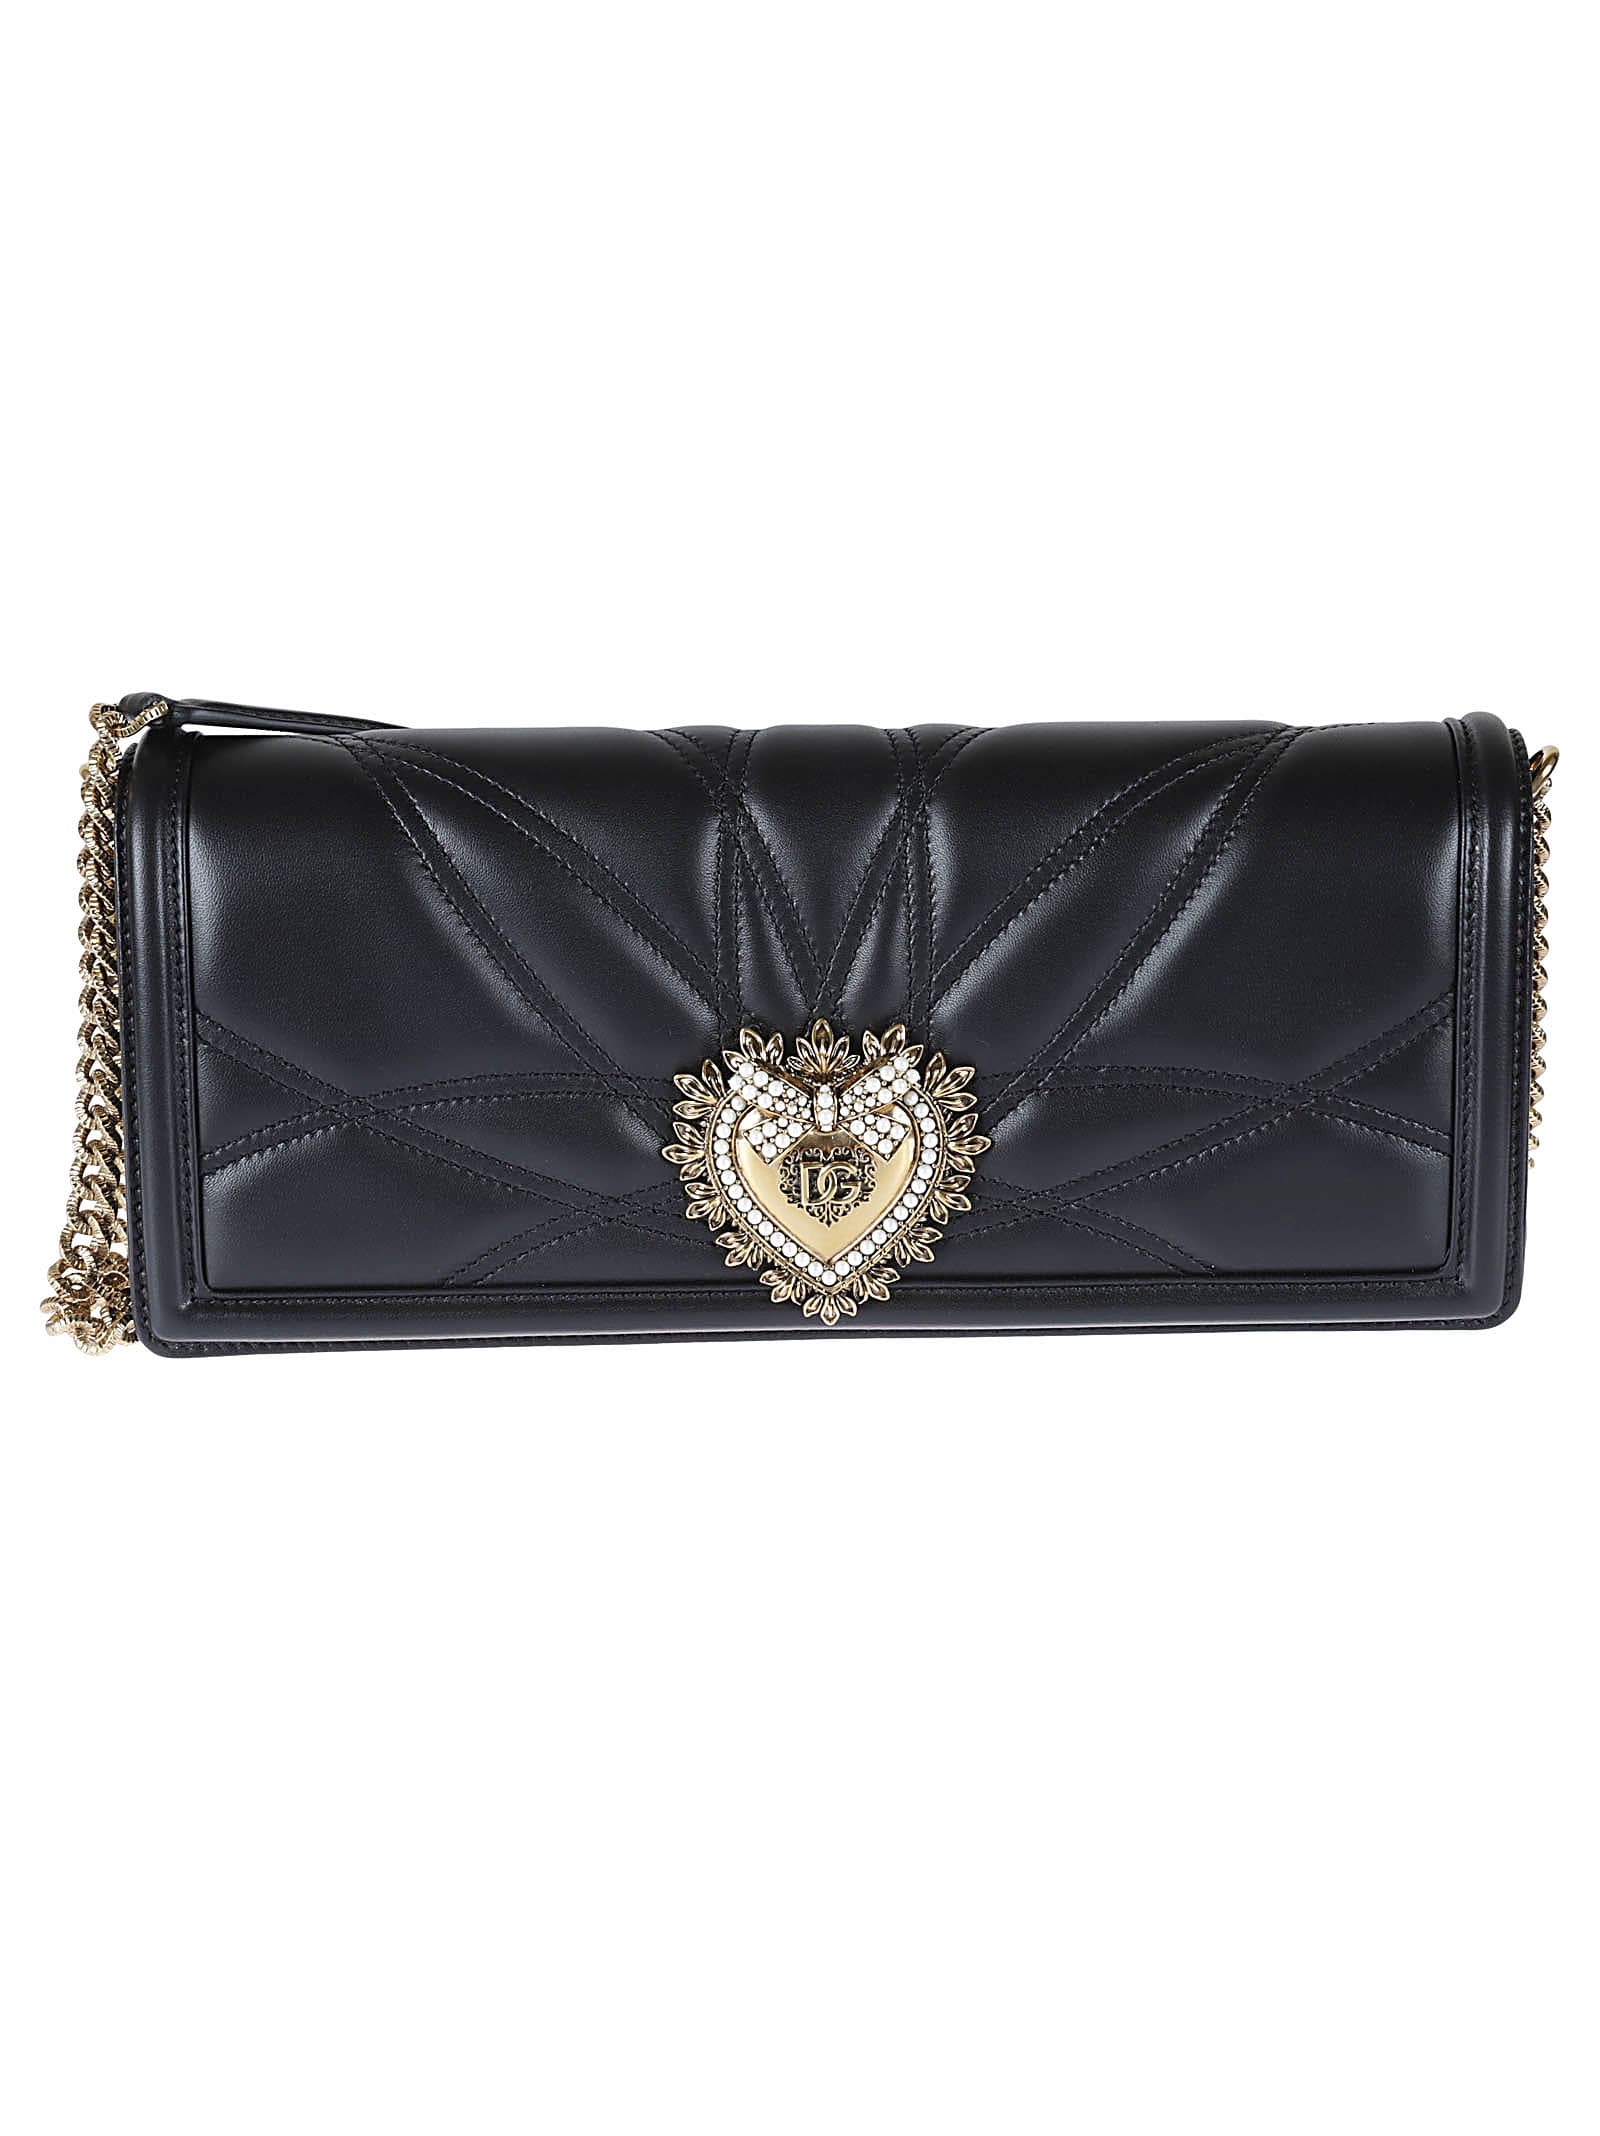 Dolce & Gabbana Quilted Devotion Shoulder Bag